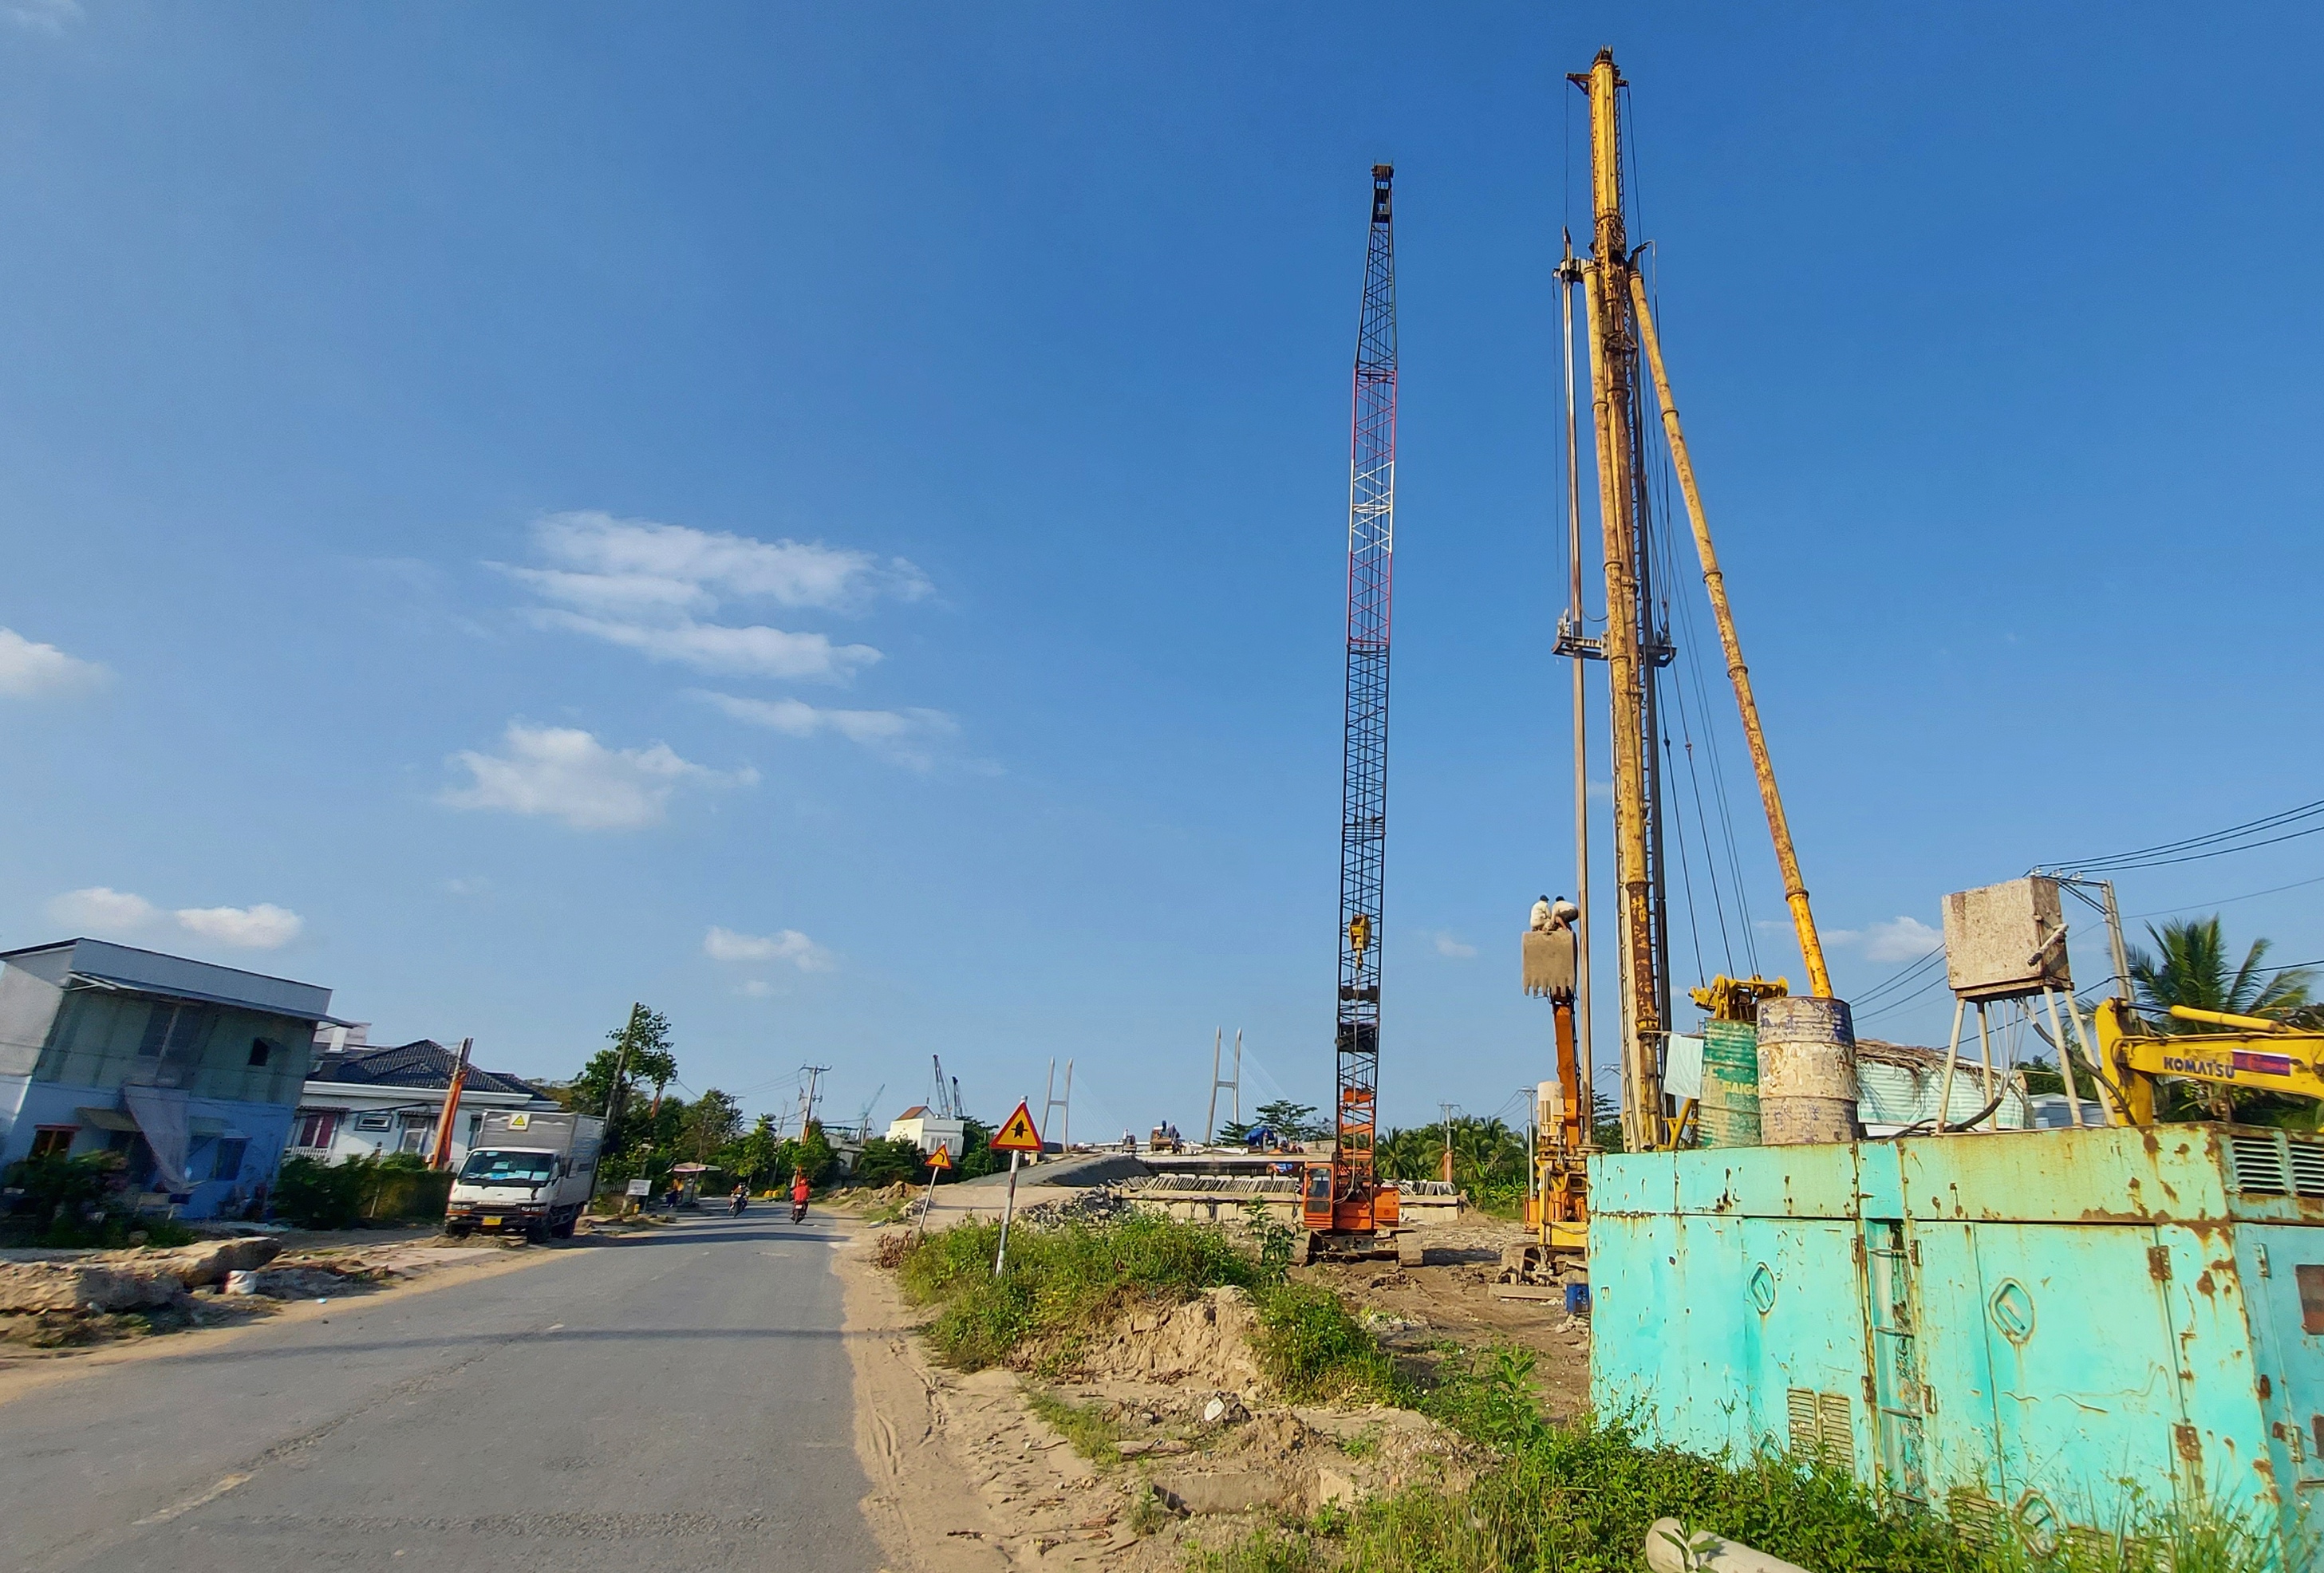 Công trình cầu Mỹ Thuận 2 đang thi công, sẽ kết nối giao thông giữa Vĩnh Long và các tỉnh ĐBSCL, góp phần thúc đẩy phát triển kinh tế, đảm bảo quốc phòng an ninh của các tỉnh ĐBSCL.